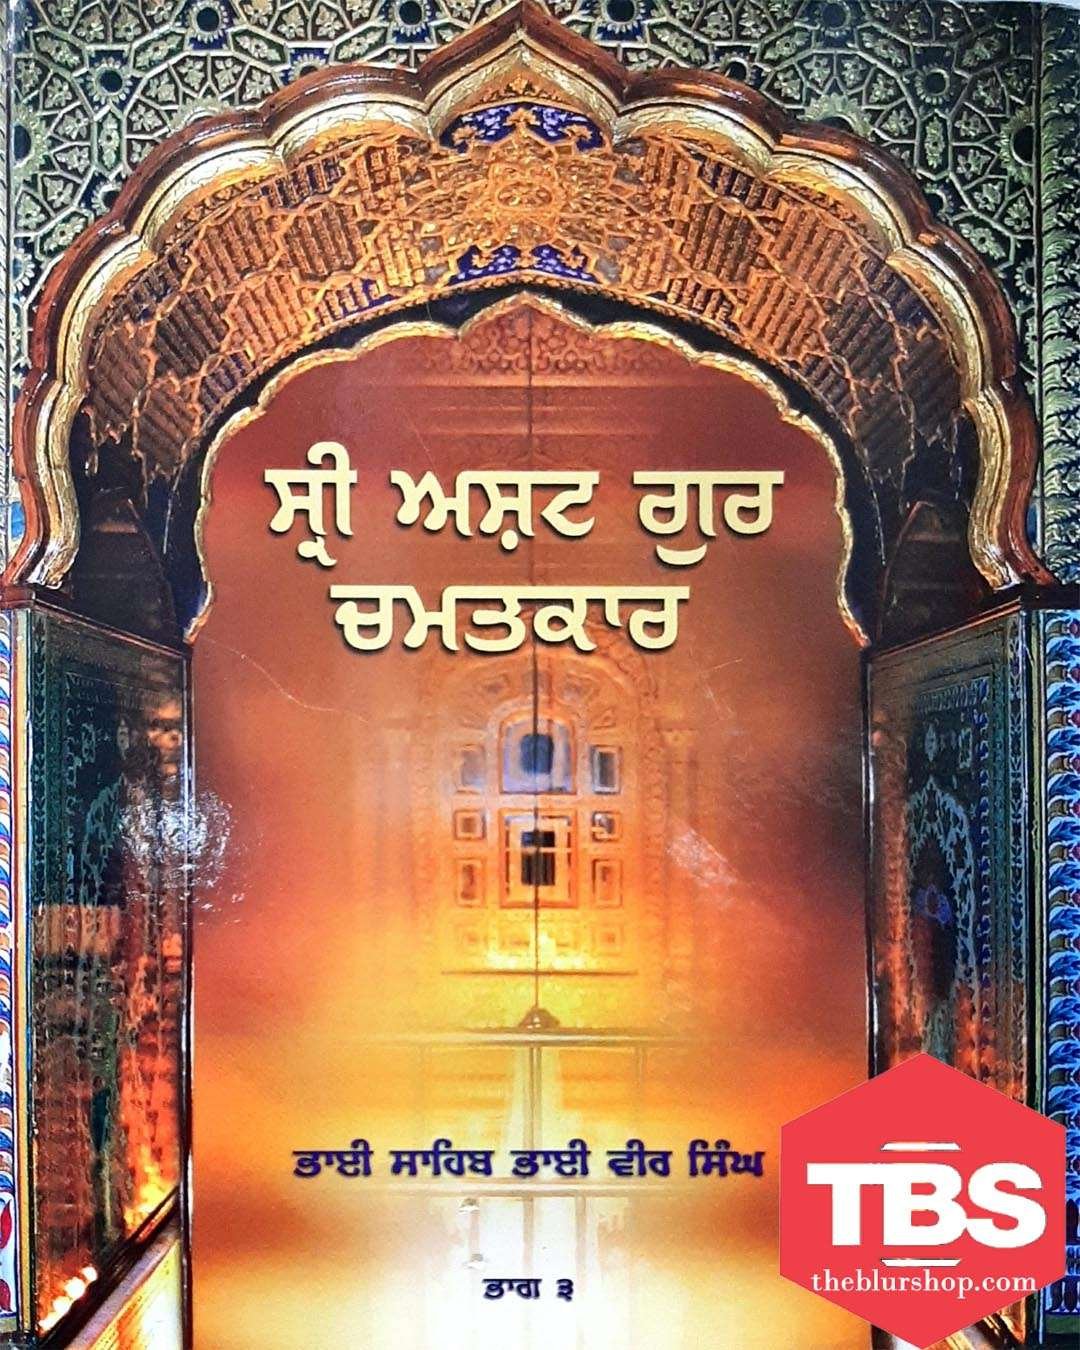 Sri Asht Guru Chamatkar (Vol-3)